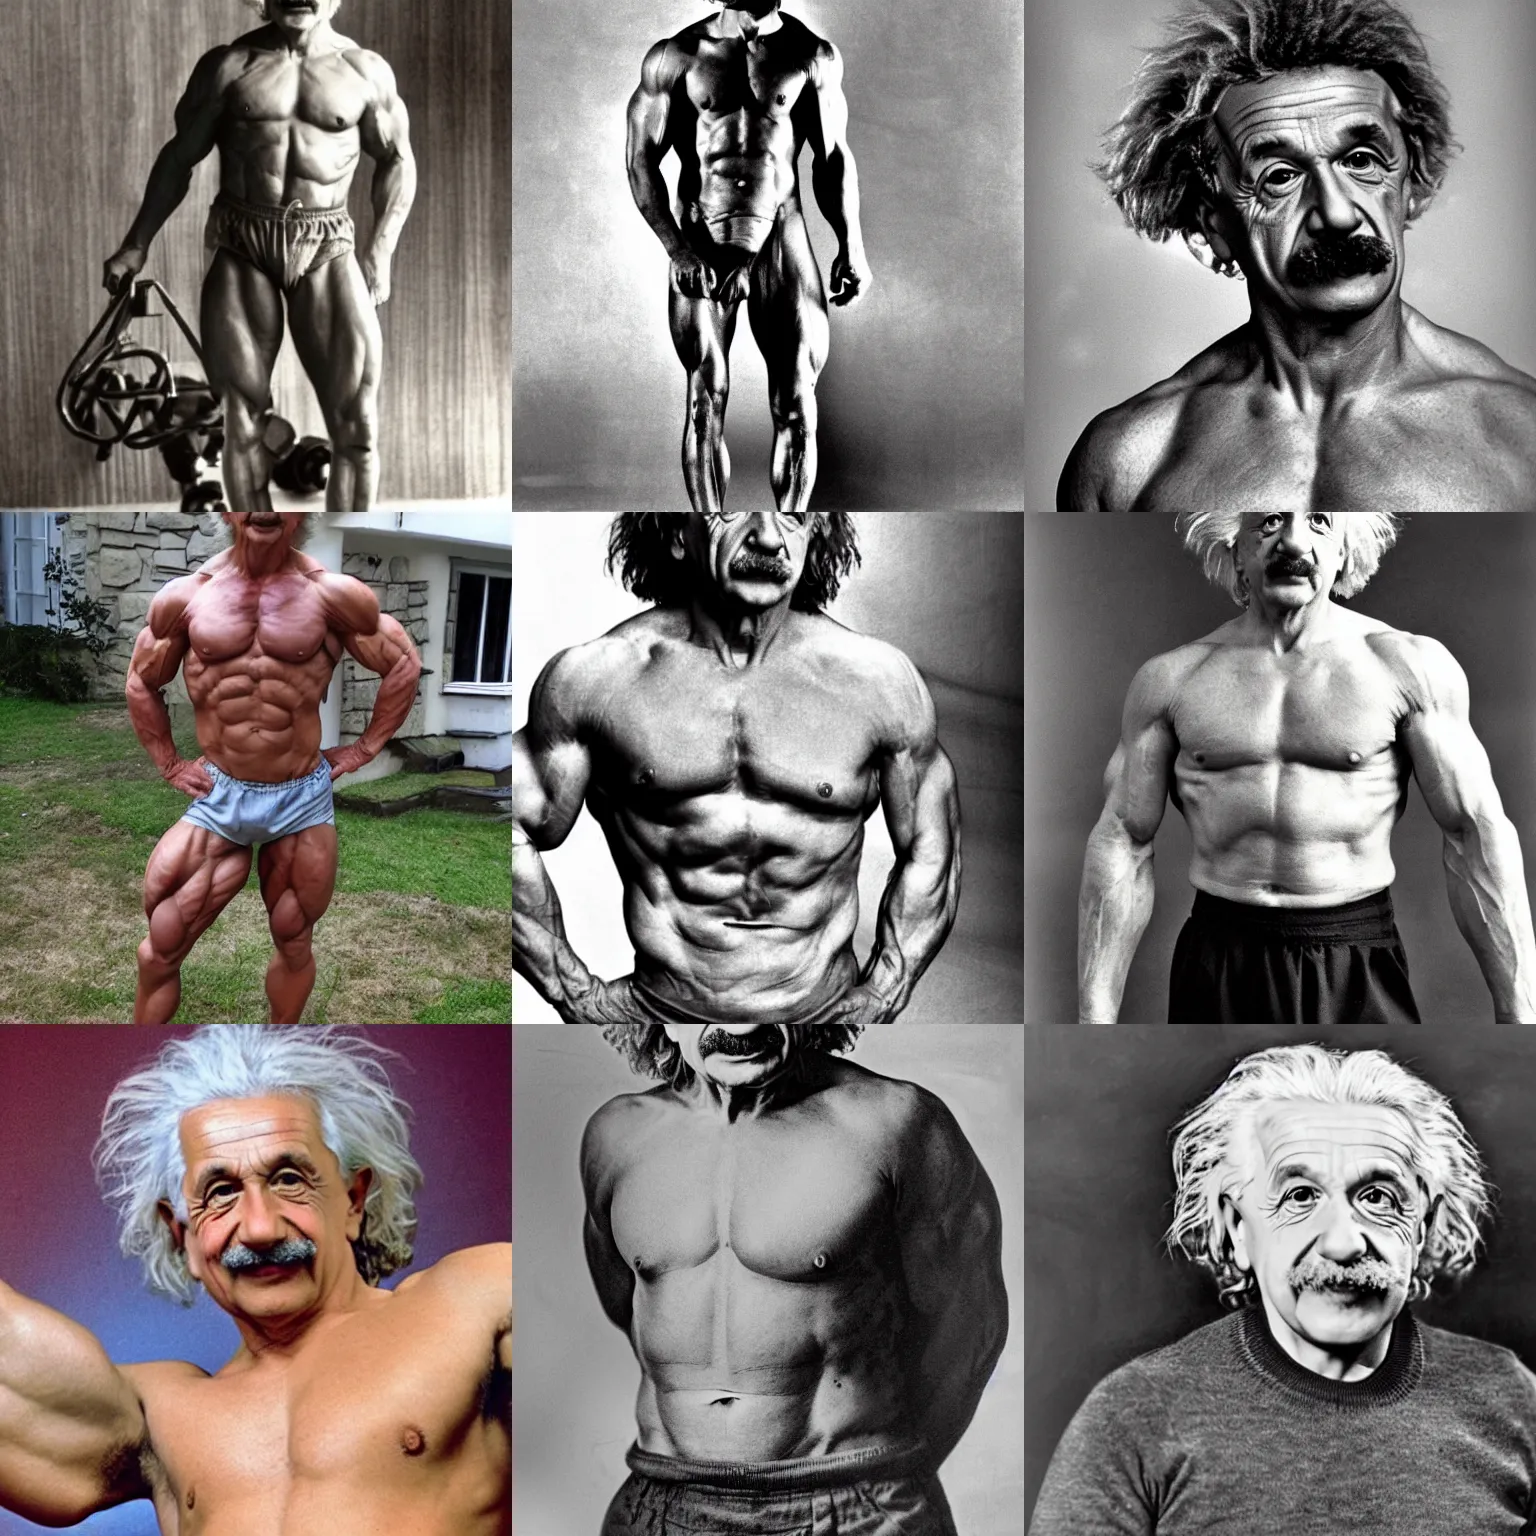 Prompt: Muscular Albert Einstein